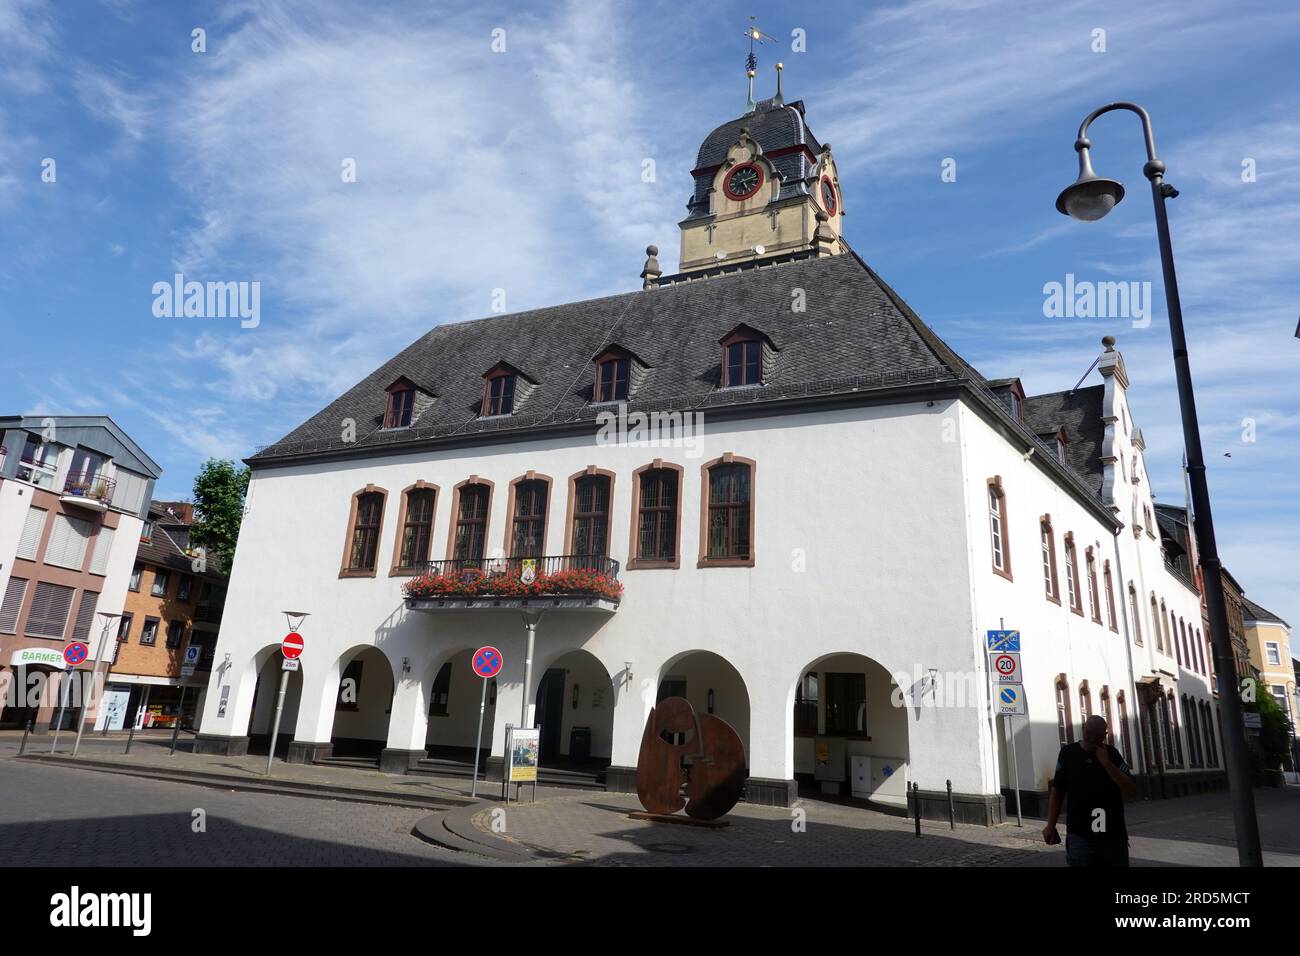 Ehemaliges Rathaus, heute Sitz der Volkshochschule, Nordrhein-Westfalen, Deutschland, Euskirchen Banque D'Images